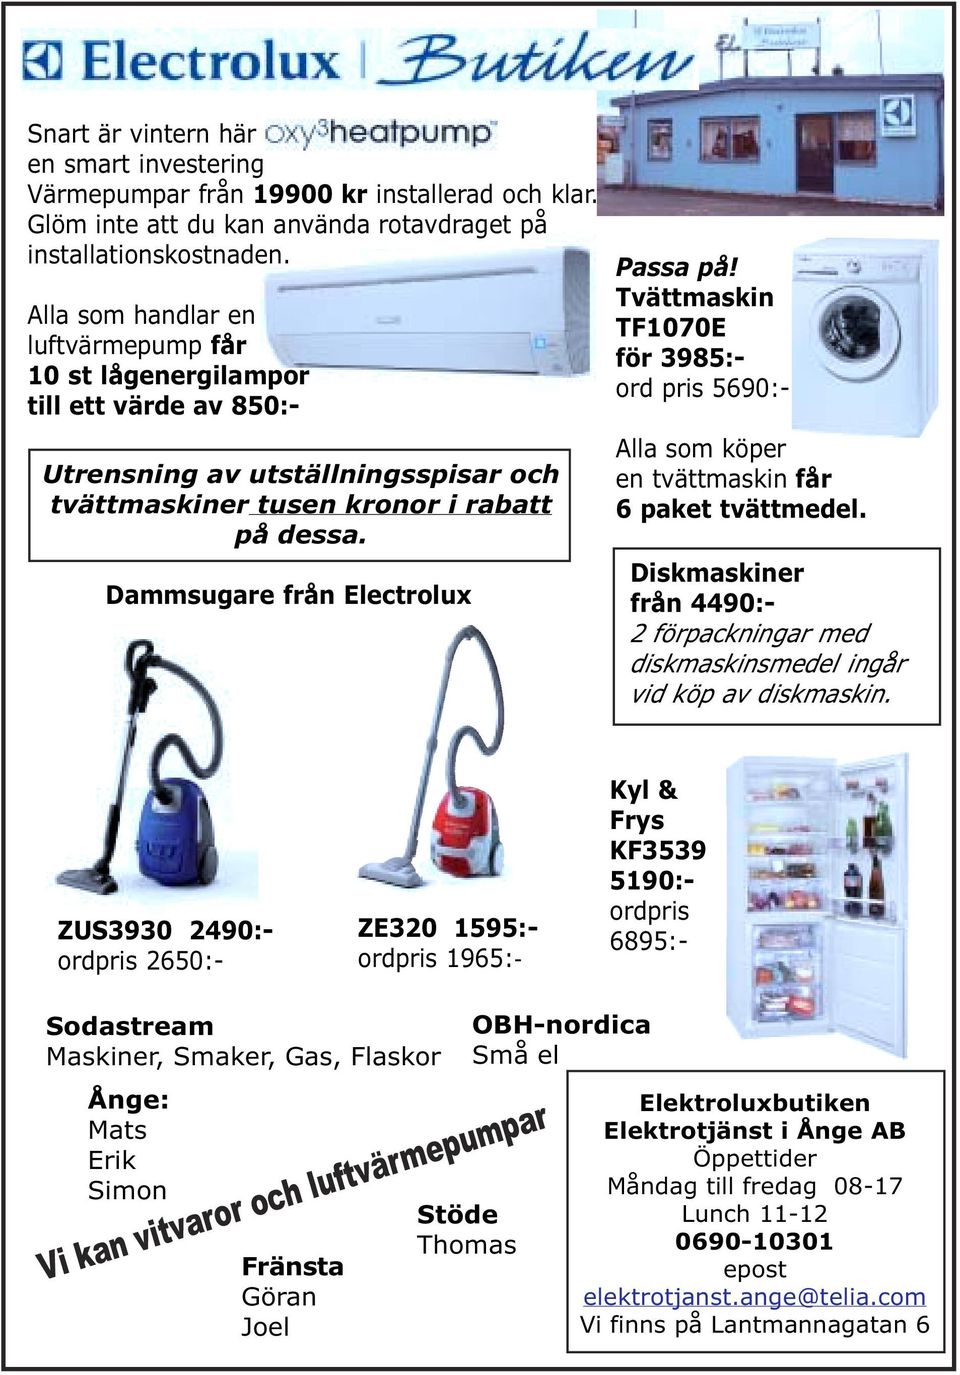 Dammsugare från Electrolux Passa på! Tvättmaskin TF1070E för 3985:- ord pris 5690:- Alla som köper en tvättmaskin får 6 paket tvättmedel.